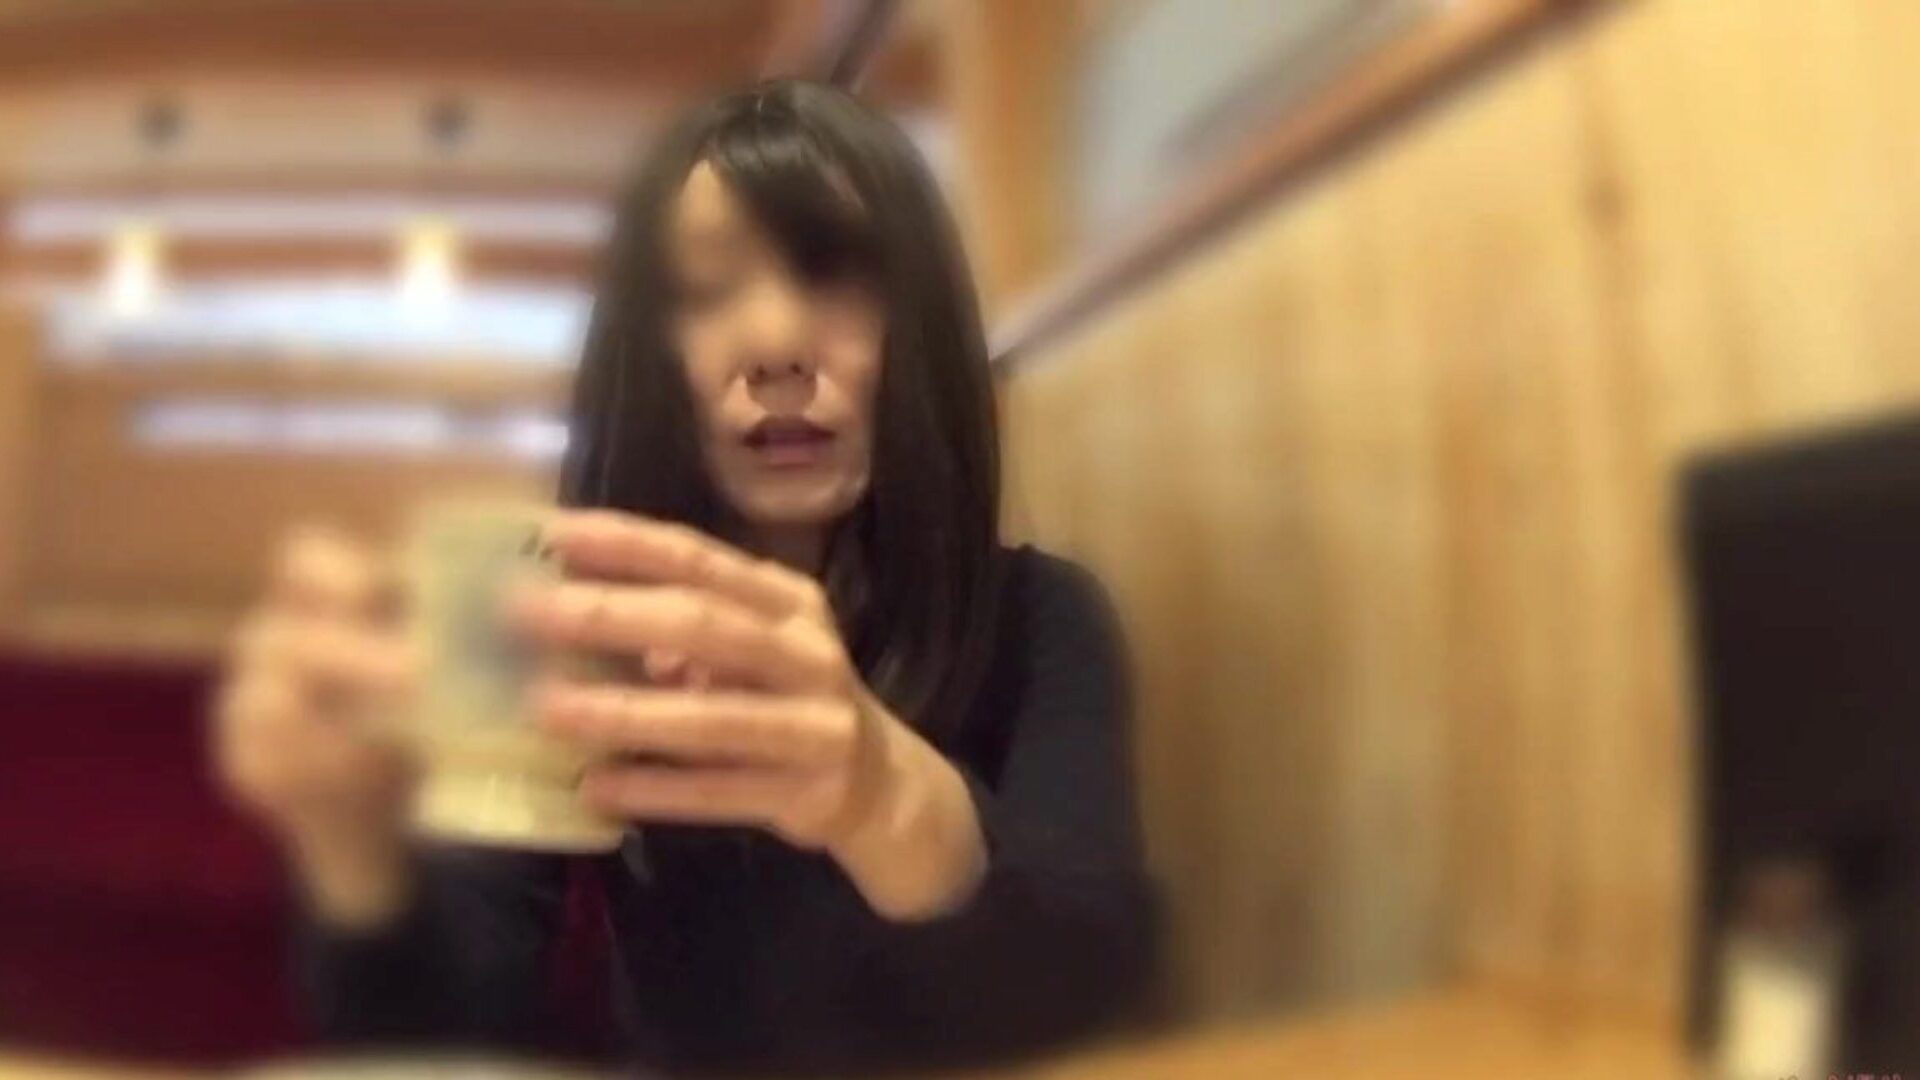 femme cocu a enlevé sa culotte au café: porno gratuit 60 montre femme cocu a enlevé sa culotte dans le café vidéo sur xhamster - la foule ultime de vidéos de tube porno gonzo japonaises japonaises asiatiques gratuites